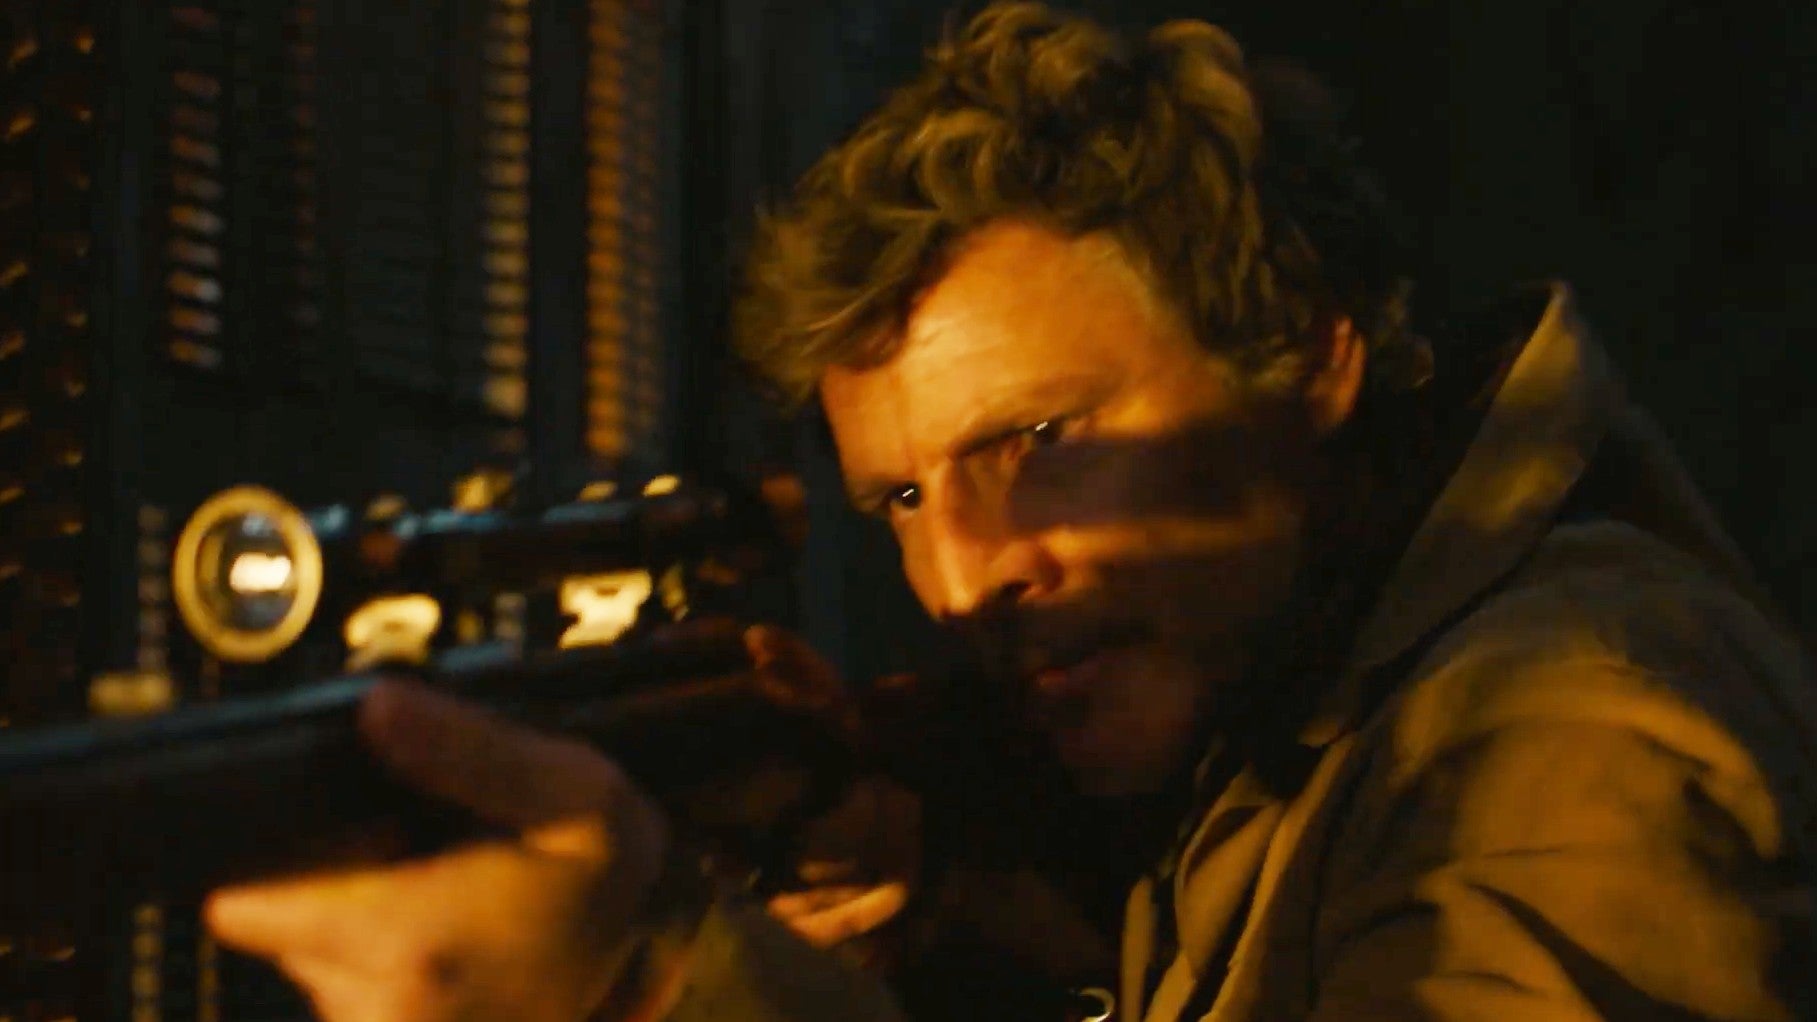 Obrazki dla Porównujemy The Last of Us od HBO z grą Sony - analiza klatka po klatce